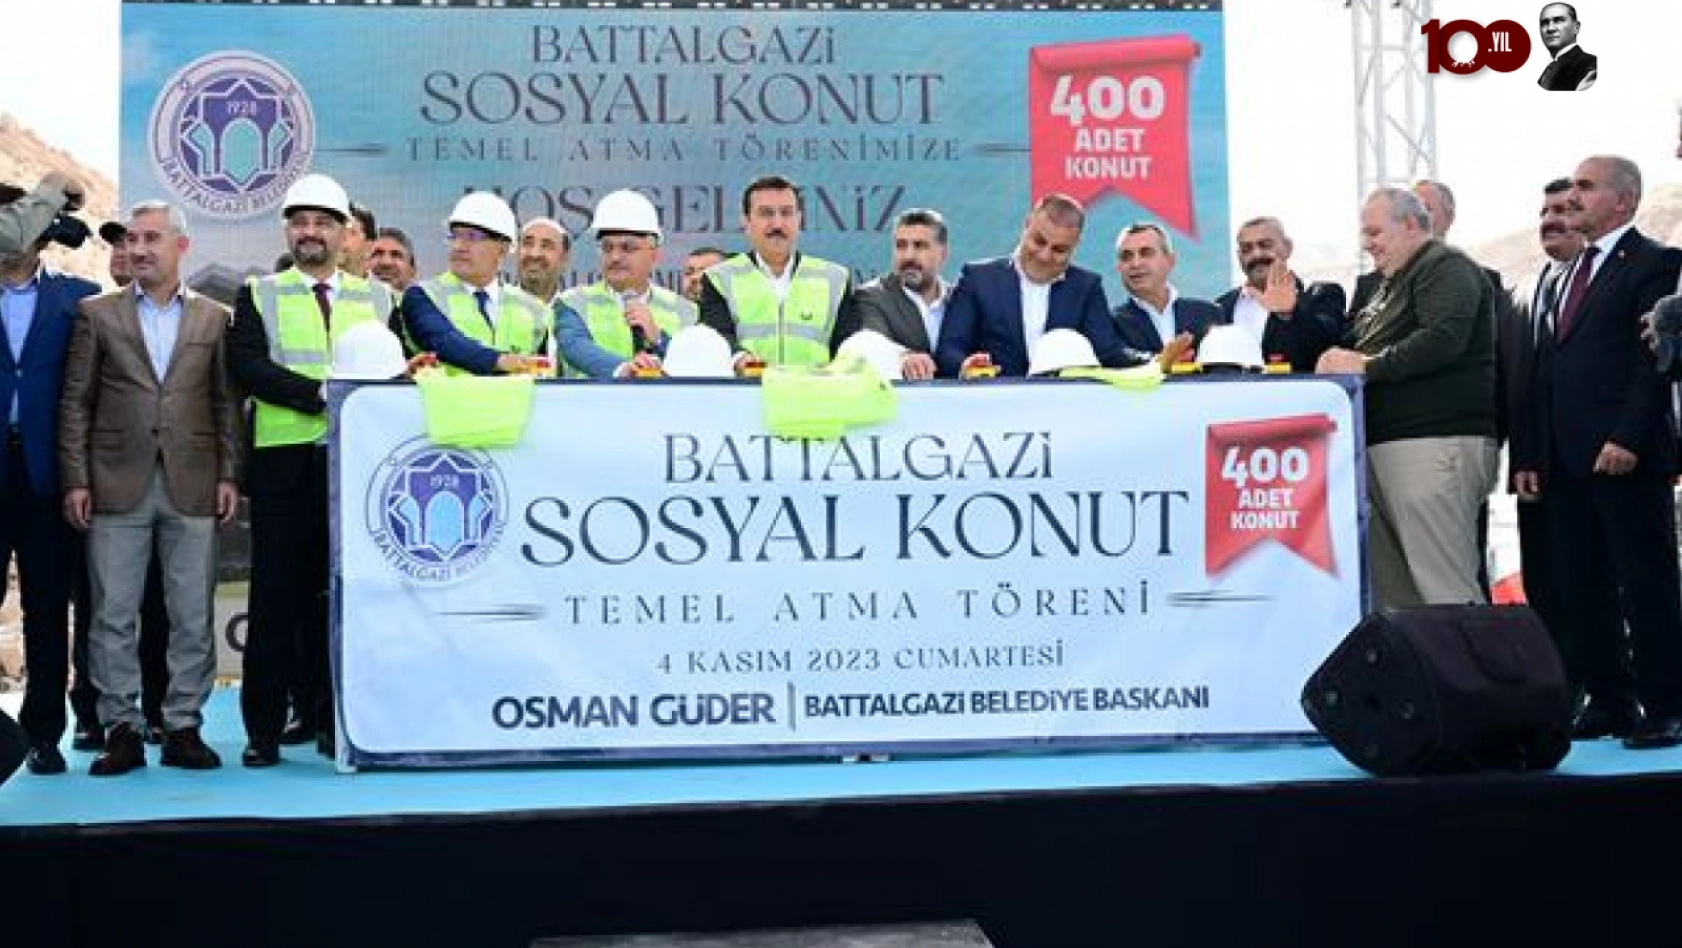 Battalgazi'de 400 sosyal konutun temeli atıldı